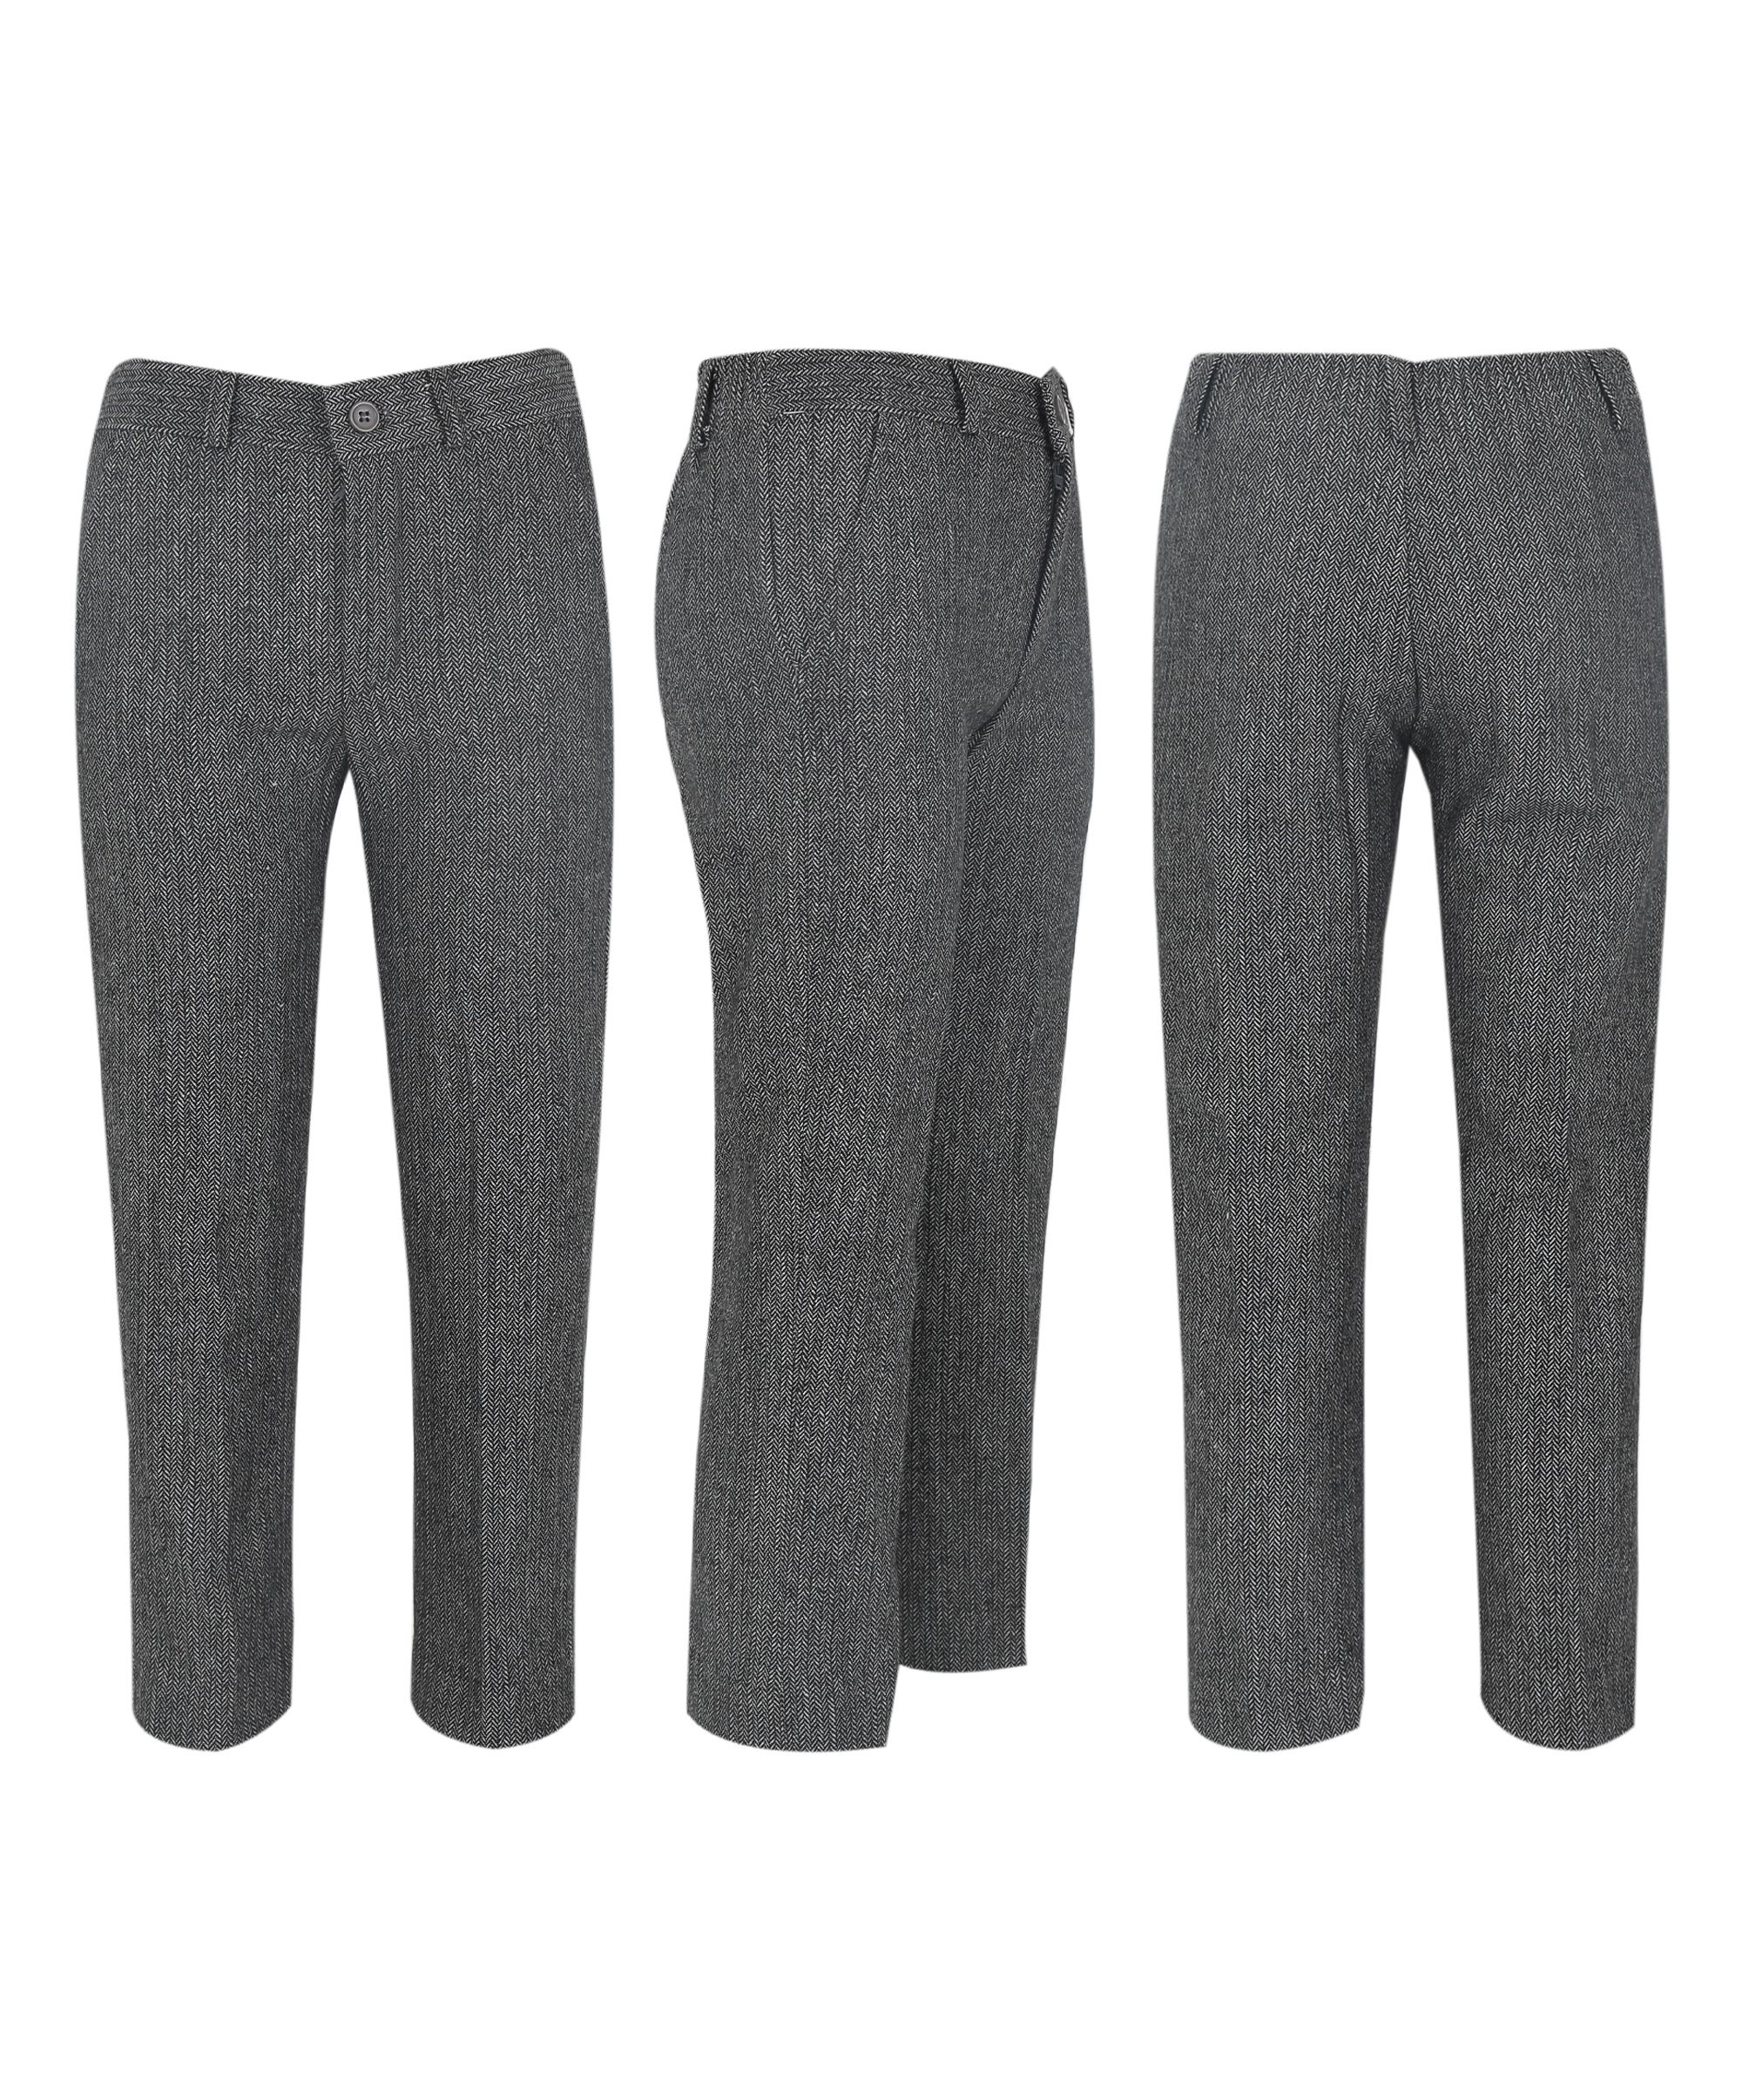 Boys Herringbone Tweed Waistcoat Suit Set - Dark Grey